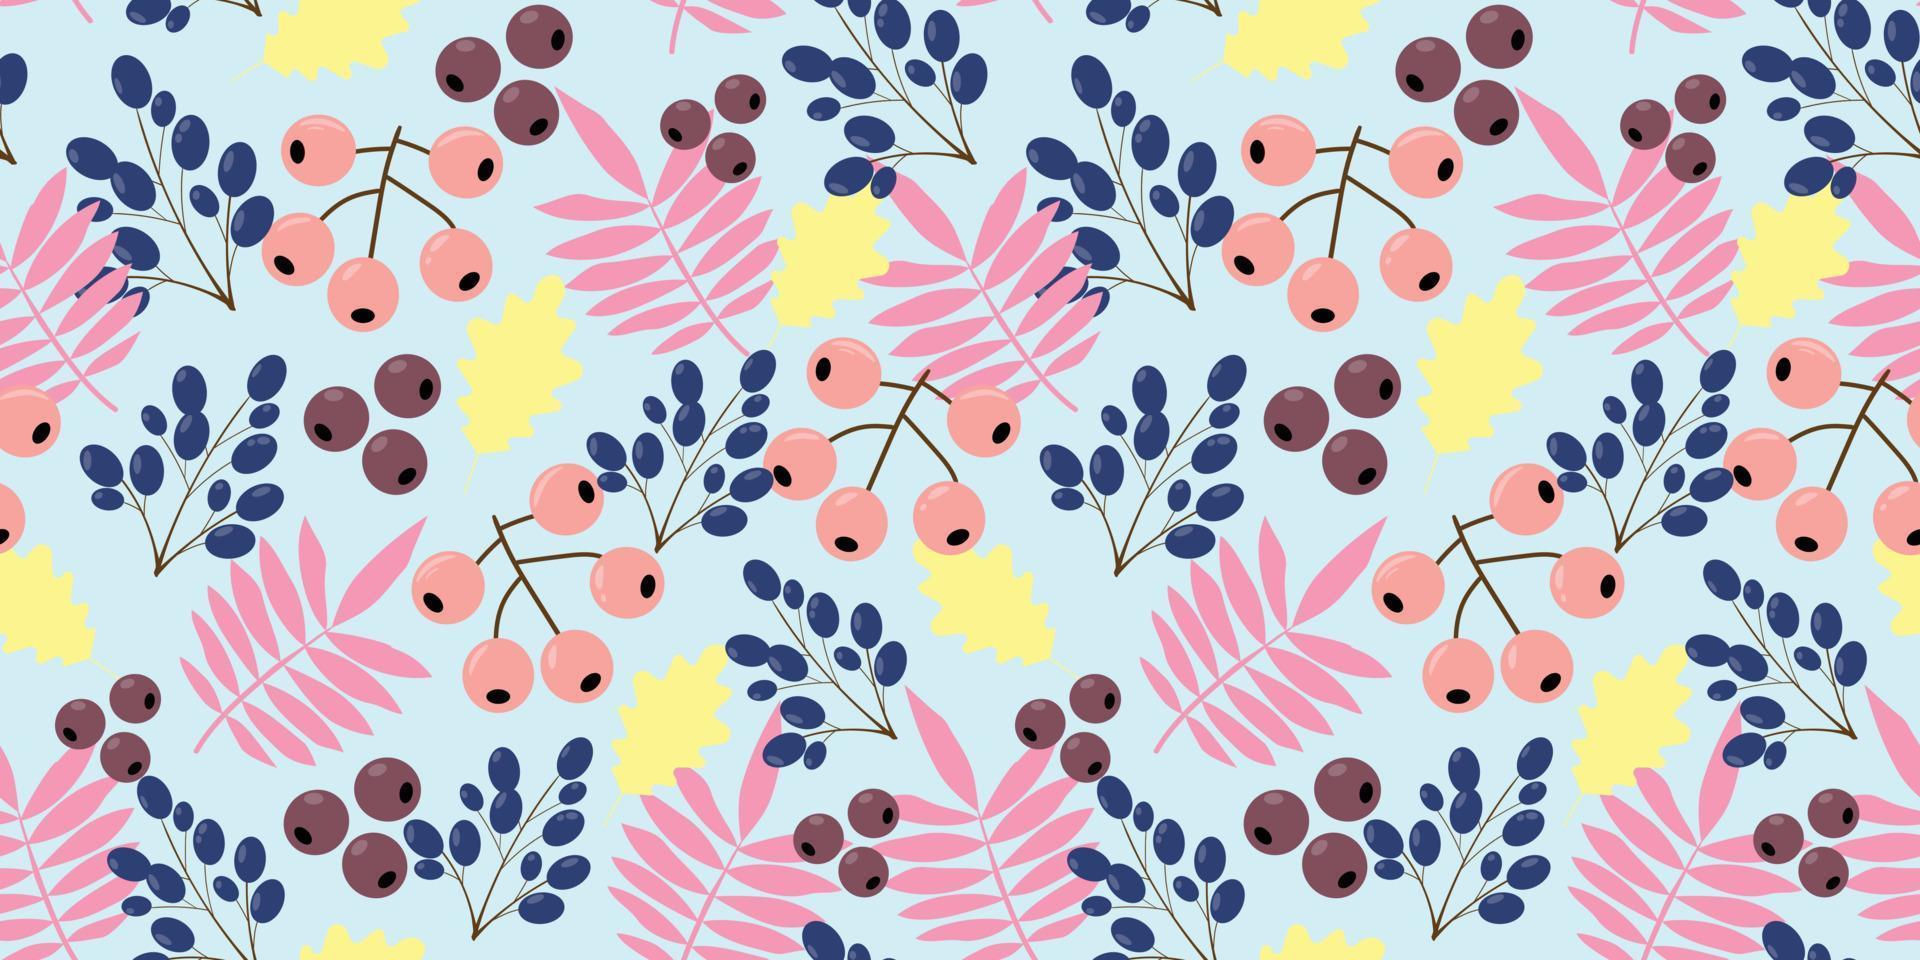 bladeren en bessen patroon. naadloos patroon met roze lijsterbesbladeren, gele eikenbladeren met bessen. herfst blauwe achtergrond met bladeren en bessen. voor textiel, papier, behang, verpakkingen. vector